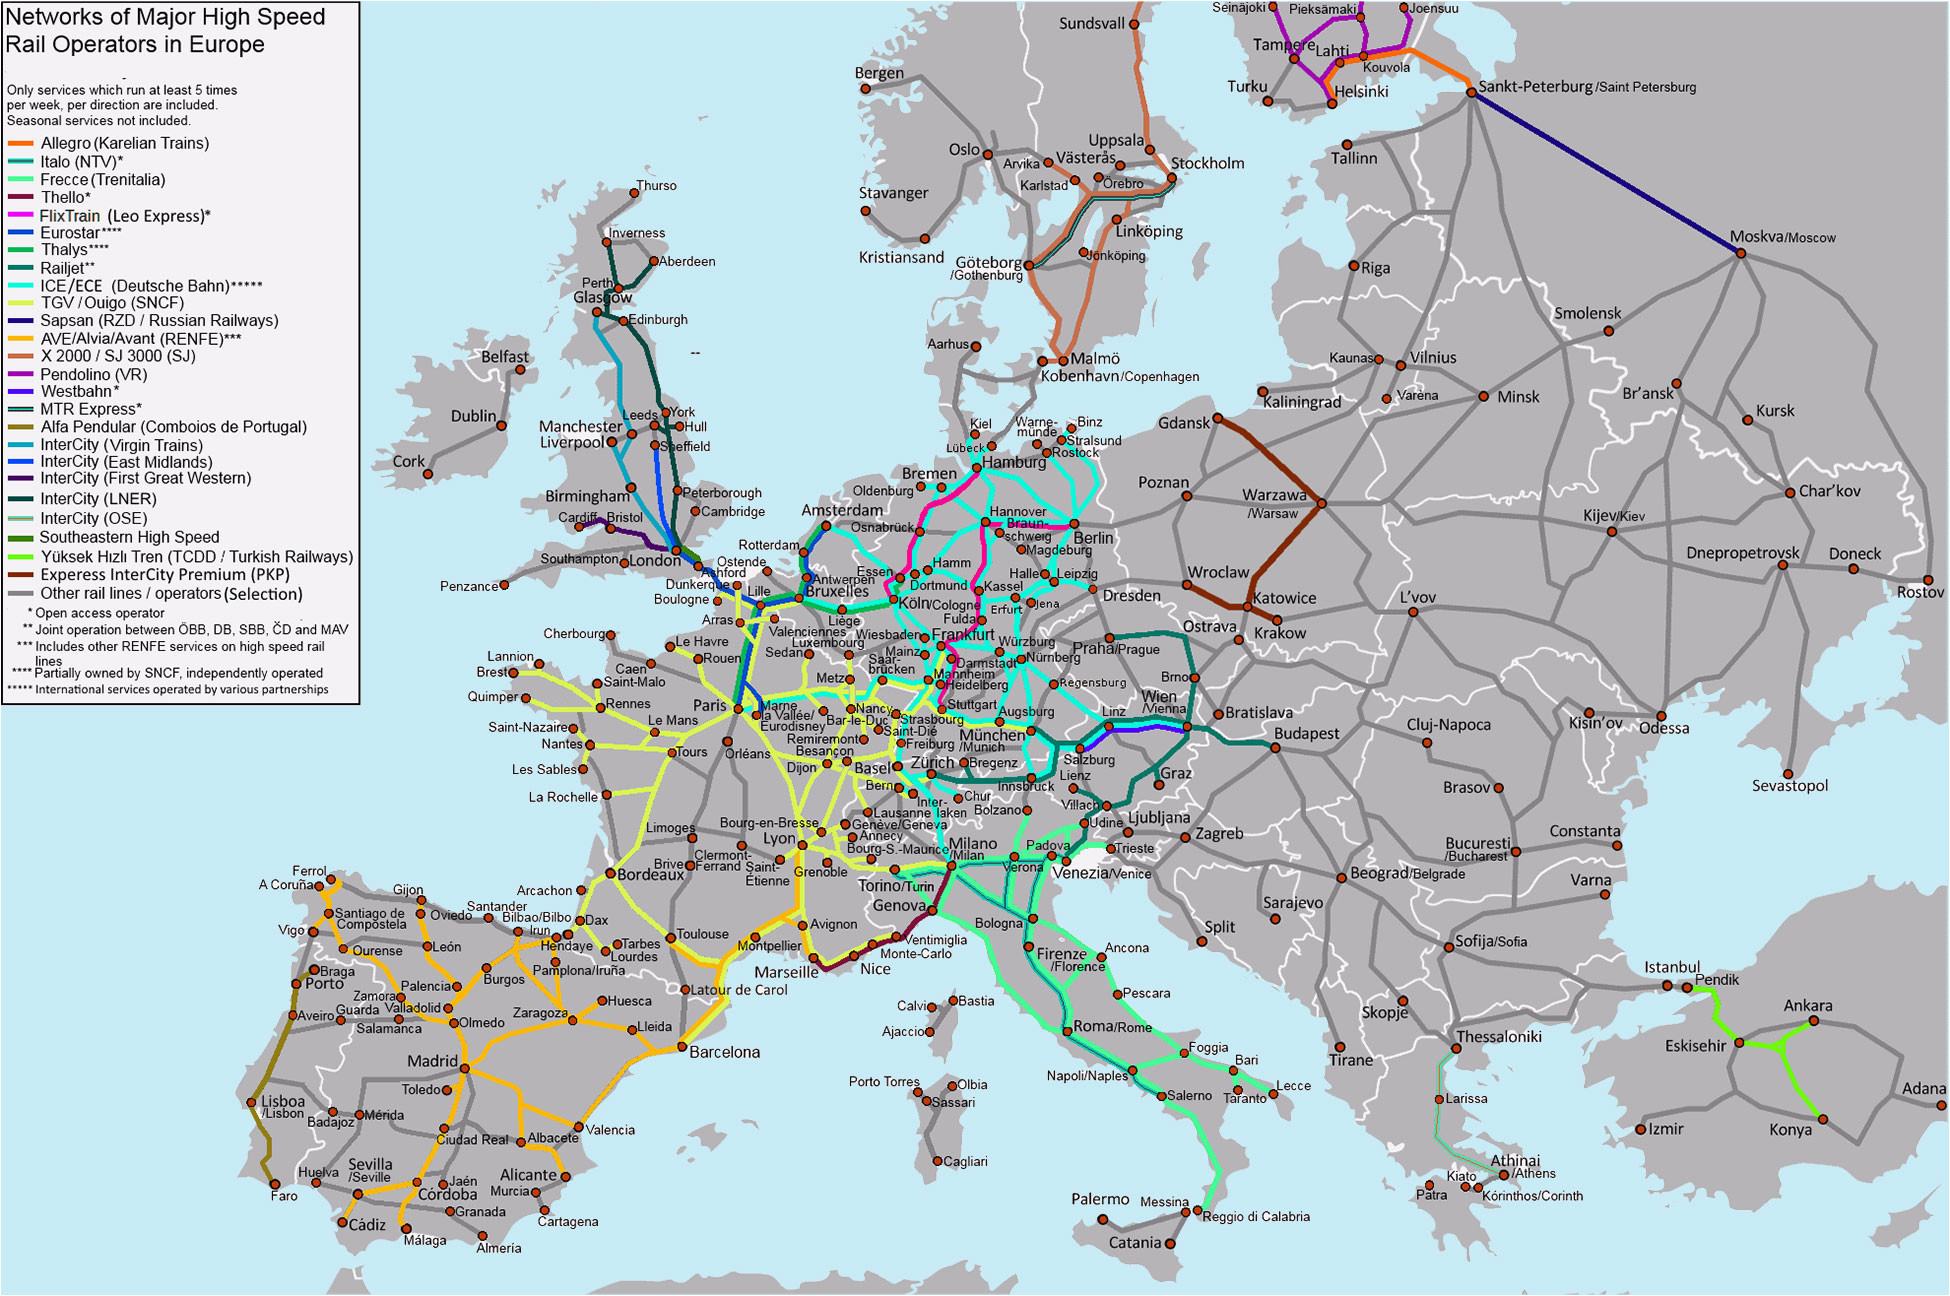 Железные дороги европейской части. Схема скоростных железных дорог Европы. Карта железных дорог Европы 2022 года. Железные дороги Европы карта. High Speed Railroad Map of Europe 2020.